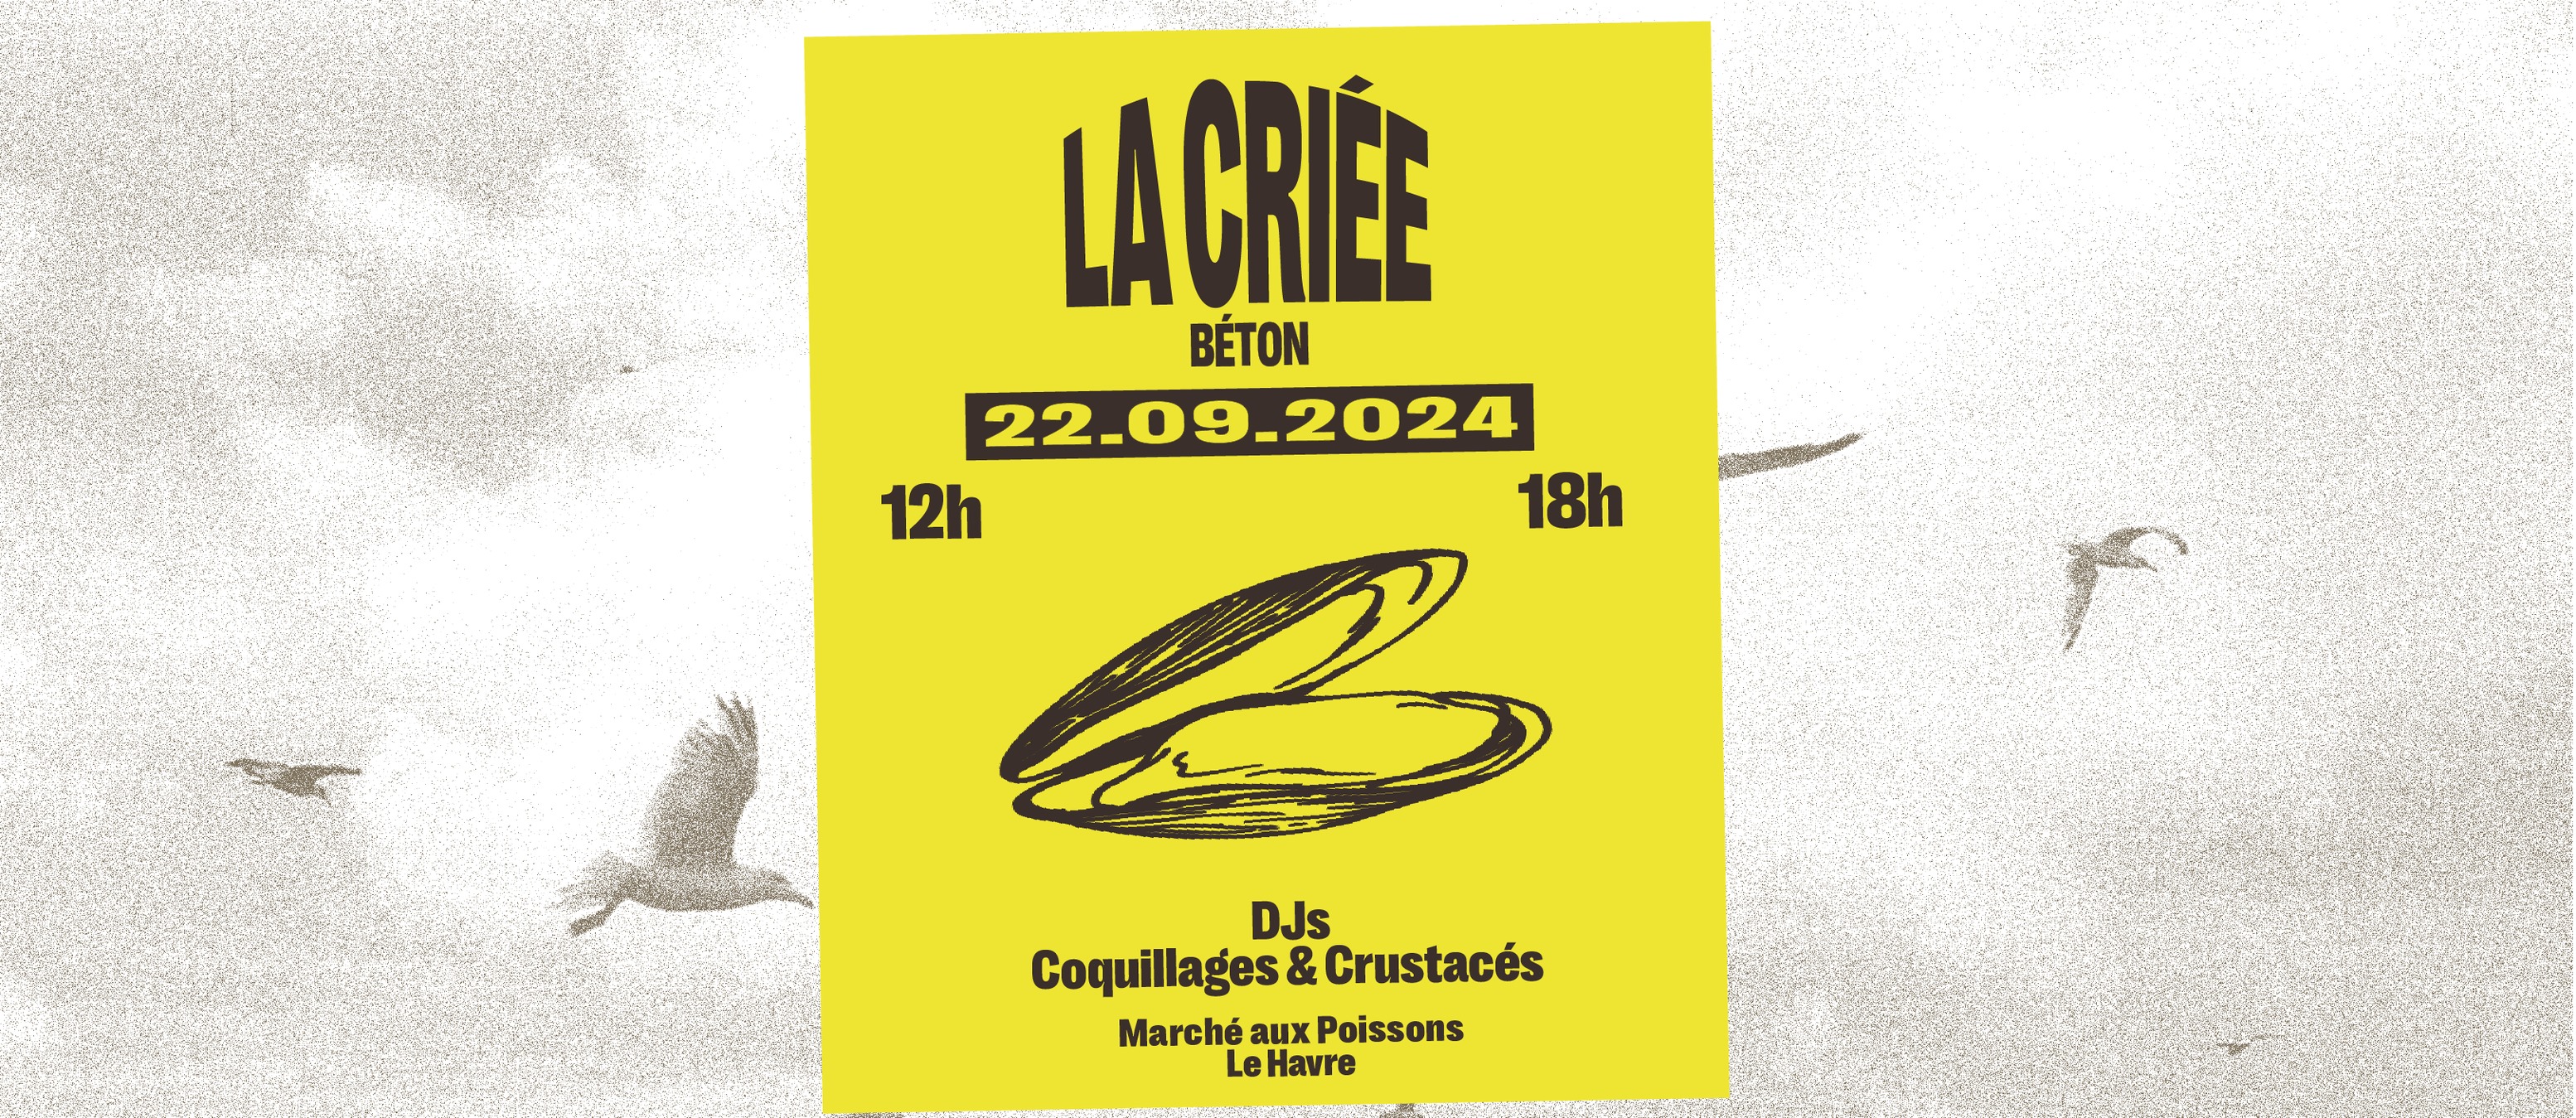 LA CRIÉE BÉTON : DJS COQUILLAGES & CRUSTACÉS 